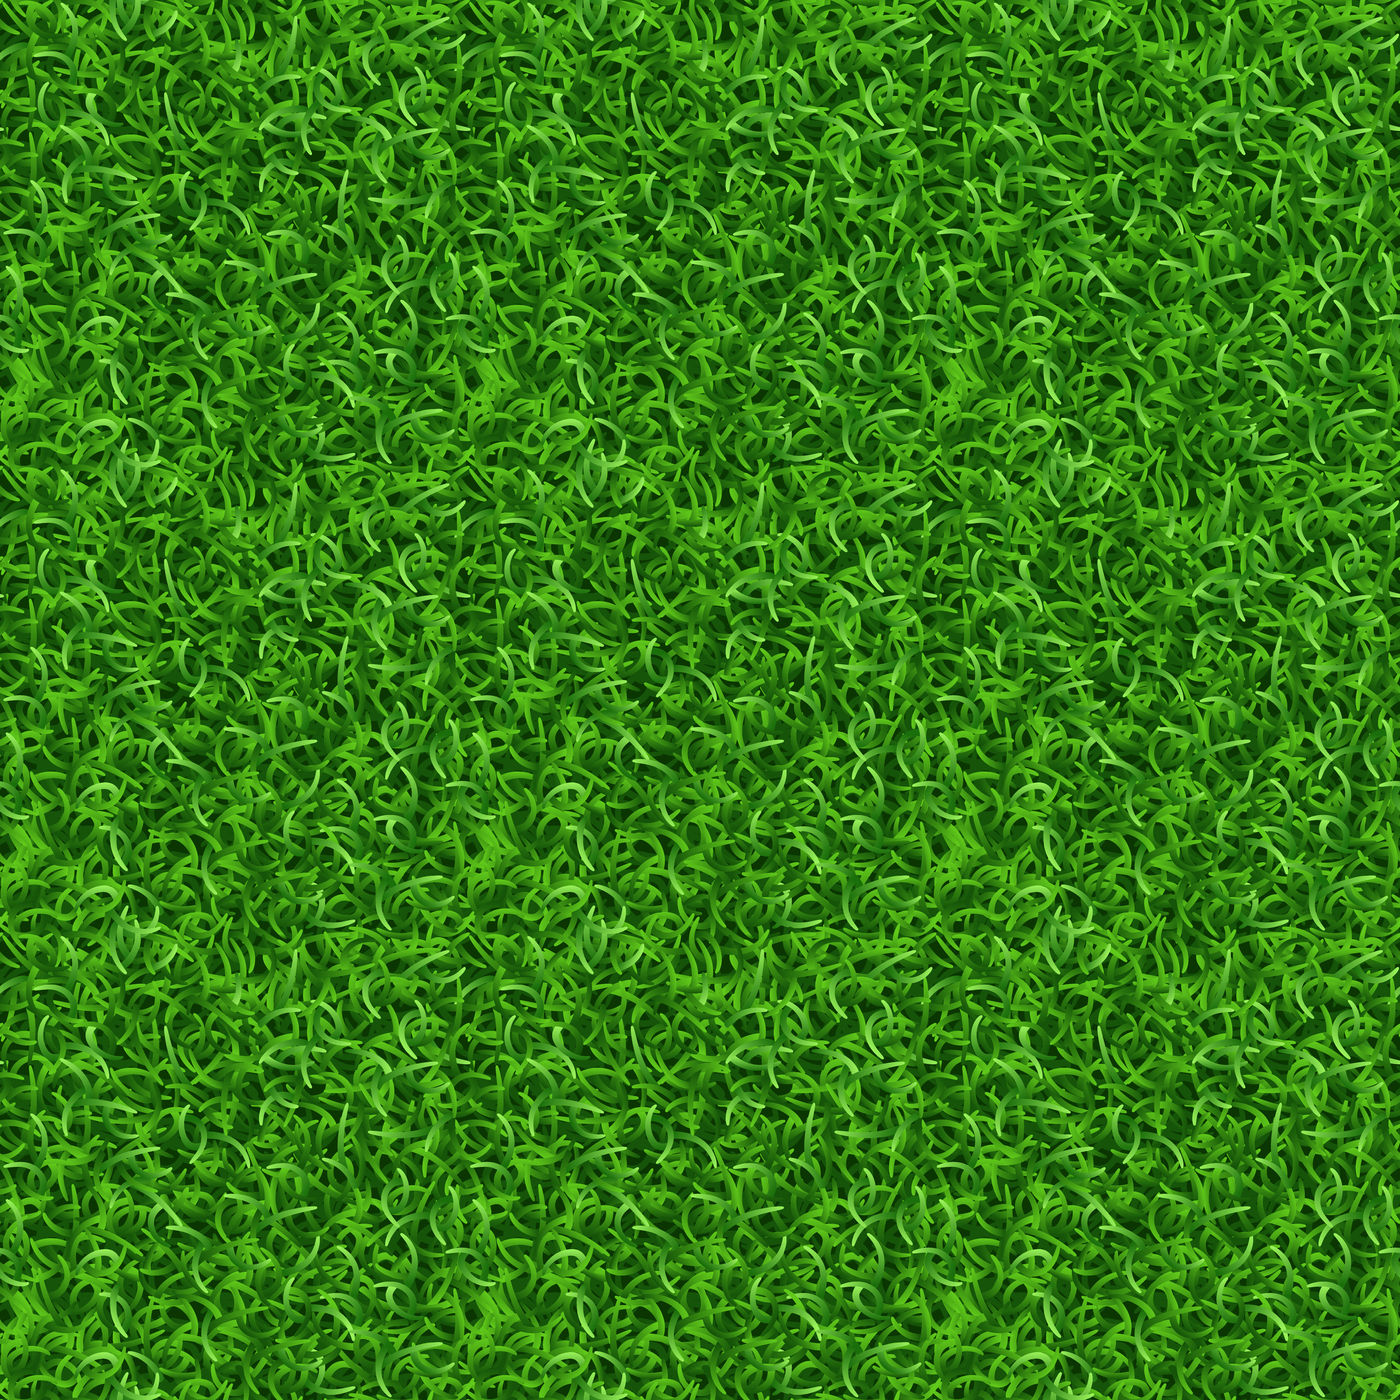 Stylized Grass Texture Seamless - Image to u